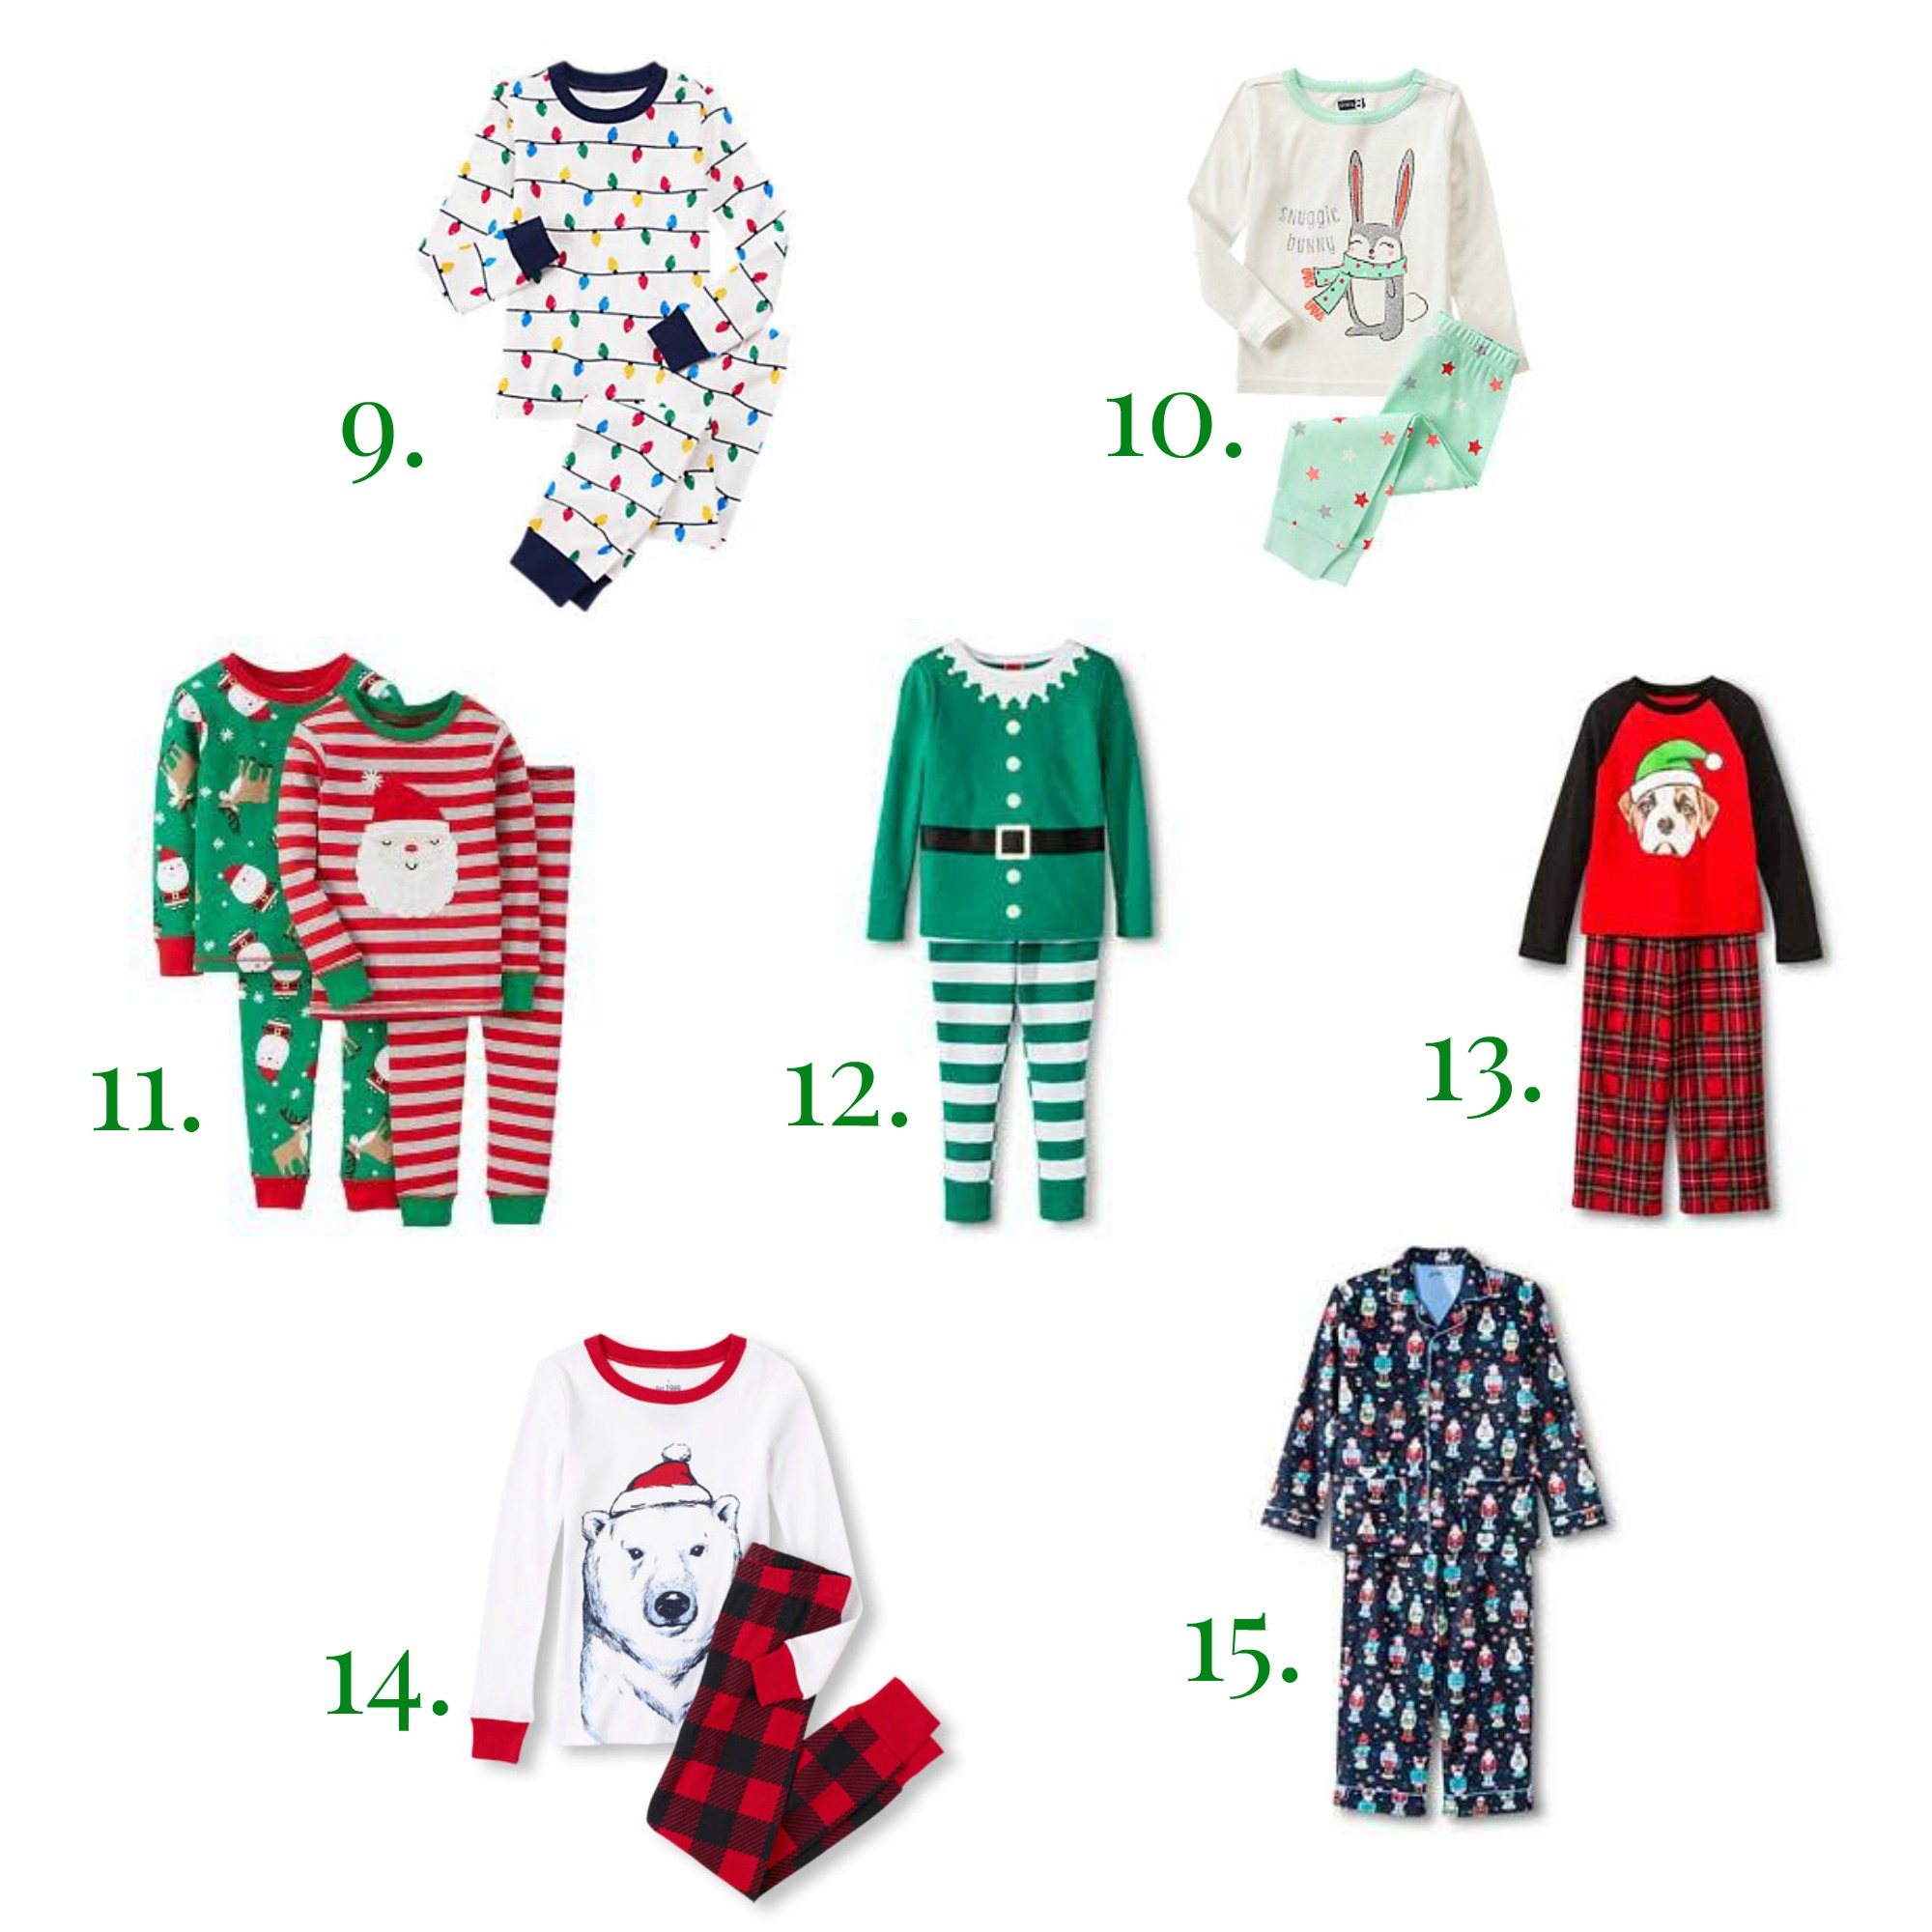 Top 15 Christmas Pajamas